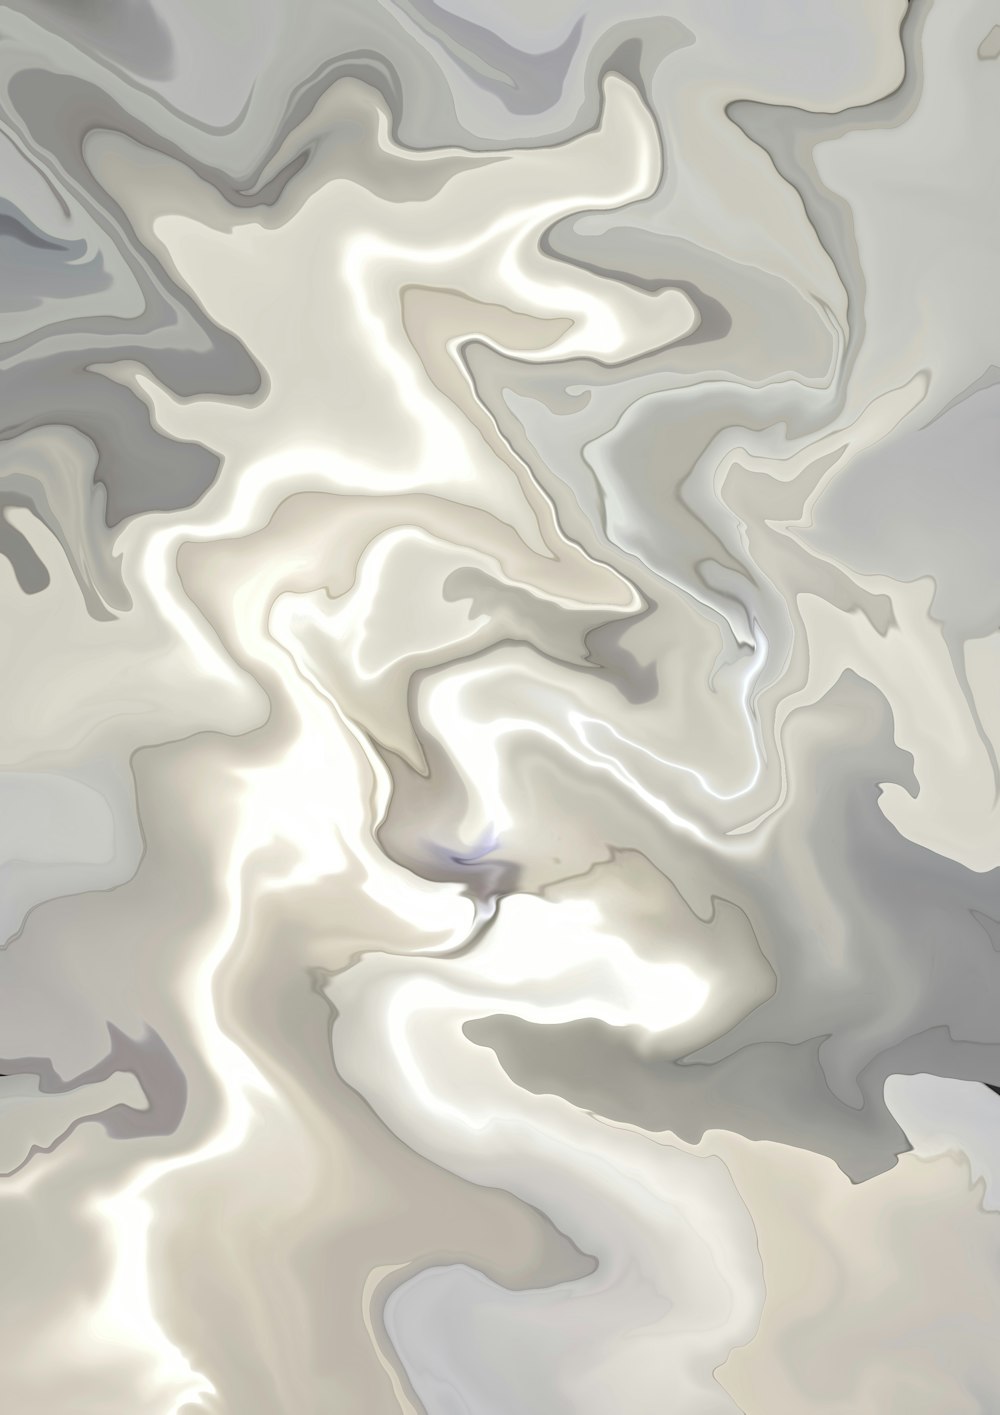 Un dipinto astratto di una superficie bianca e grigia